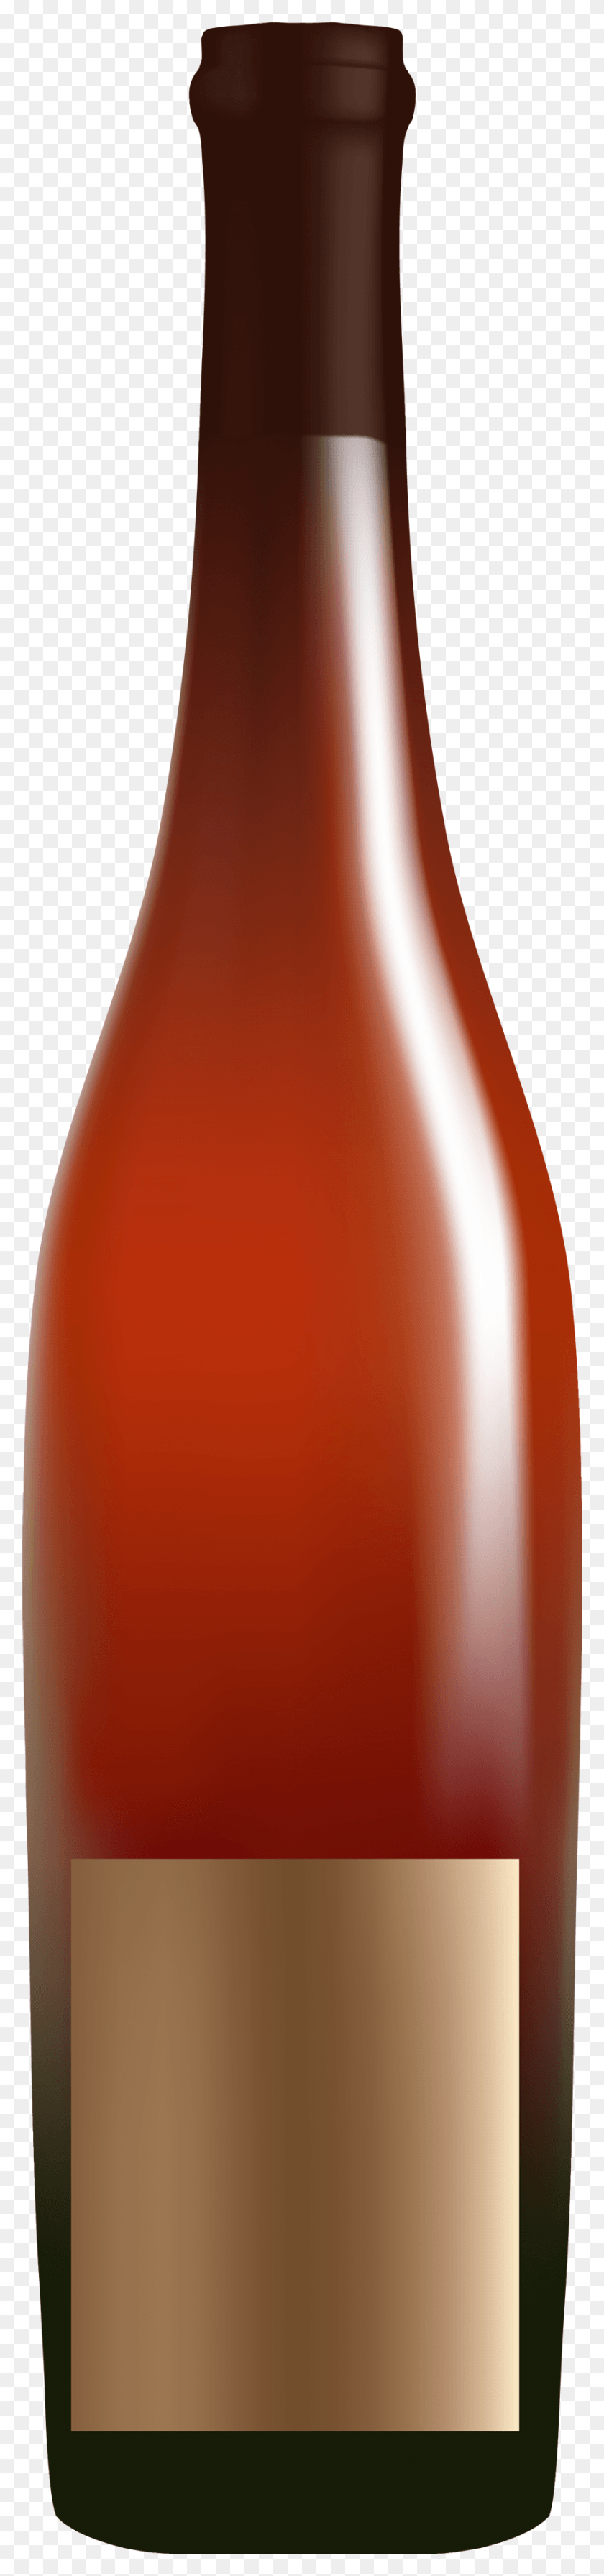 873x3944 Png Бутылка Красного Алкоголя, Алкоголь В Бутылке, Кетчуп, Еда, Напитки Hd Png